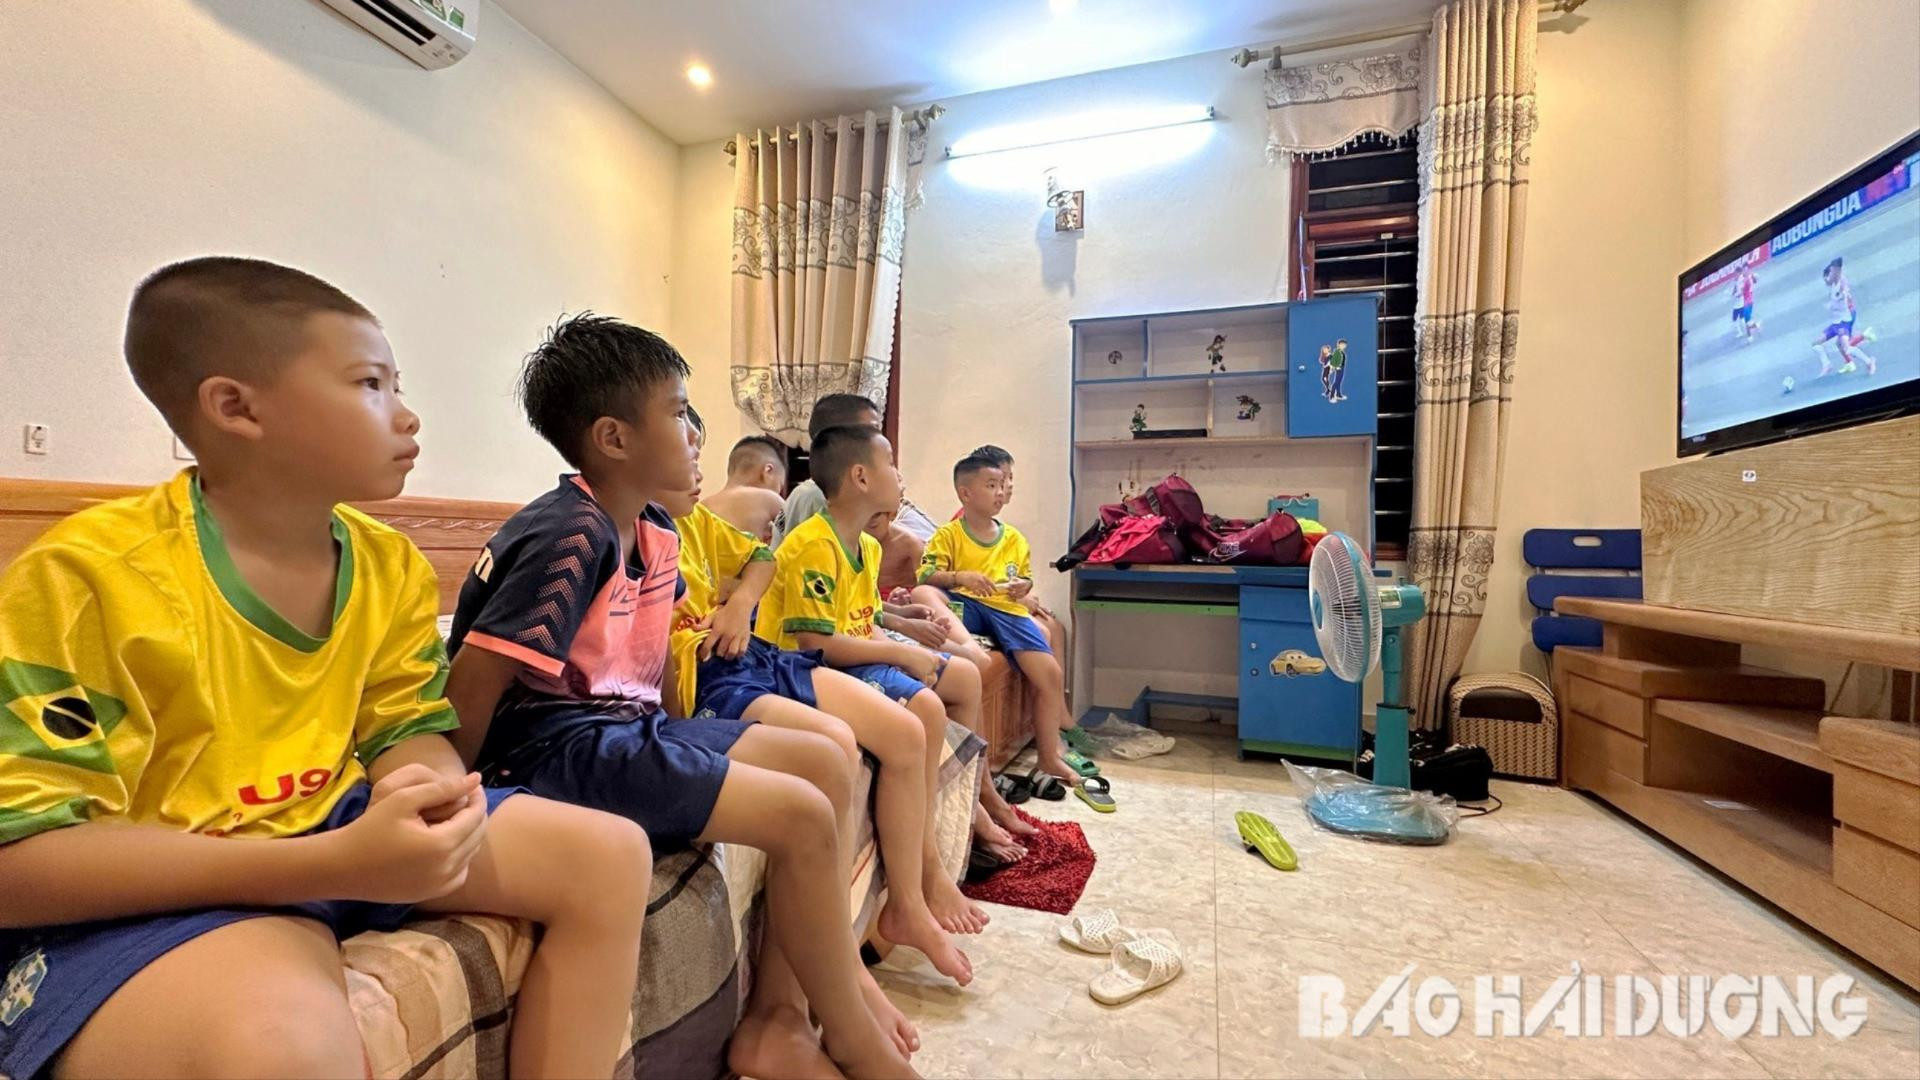 Các cầu thủ được gia đình ông Giang bố trí ăn ở trong điều kiện thuận lợi nhất để bảo đảm sức khỏe và tâm lý, do nhiều cầu thủ còn rất nhỏ tuổi phải sống xa gia đình